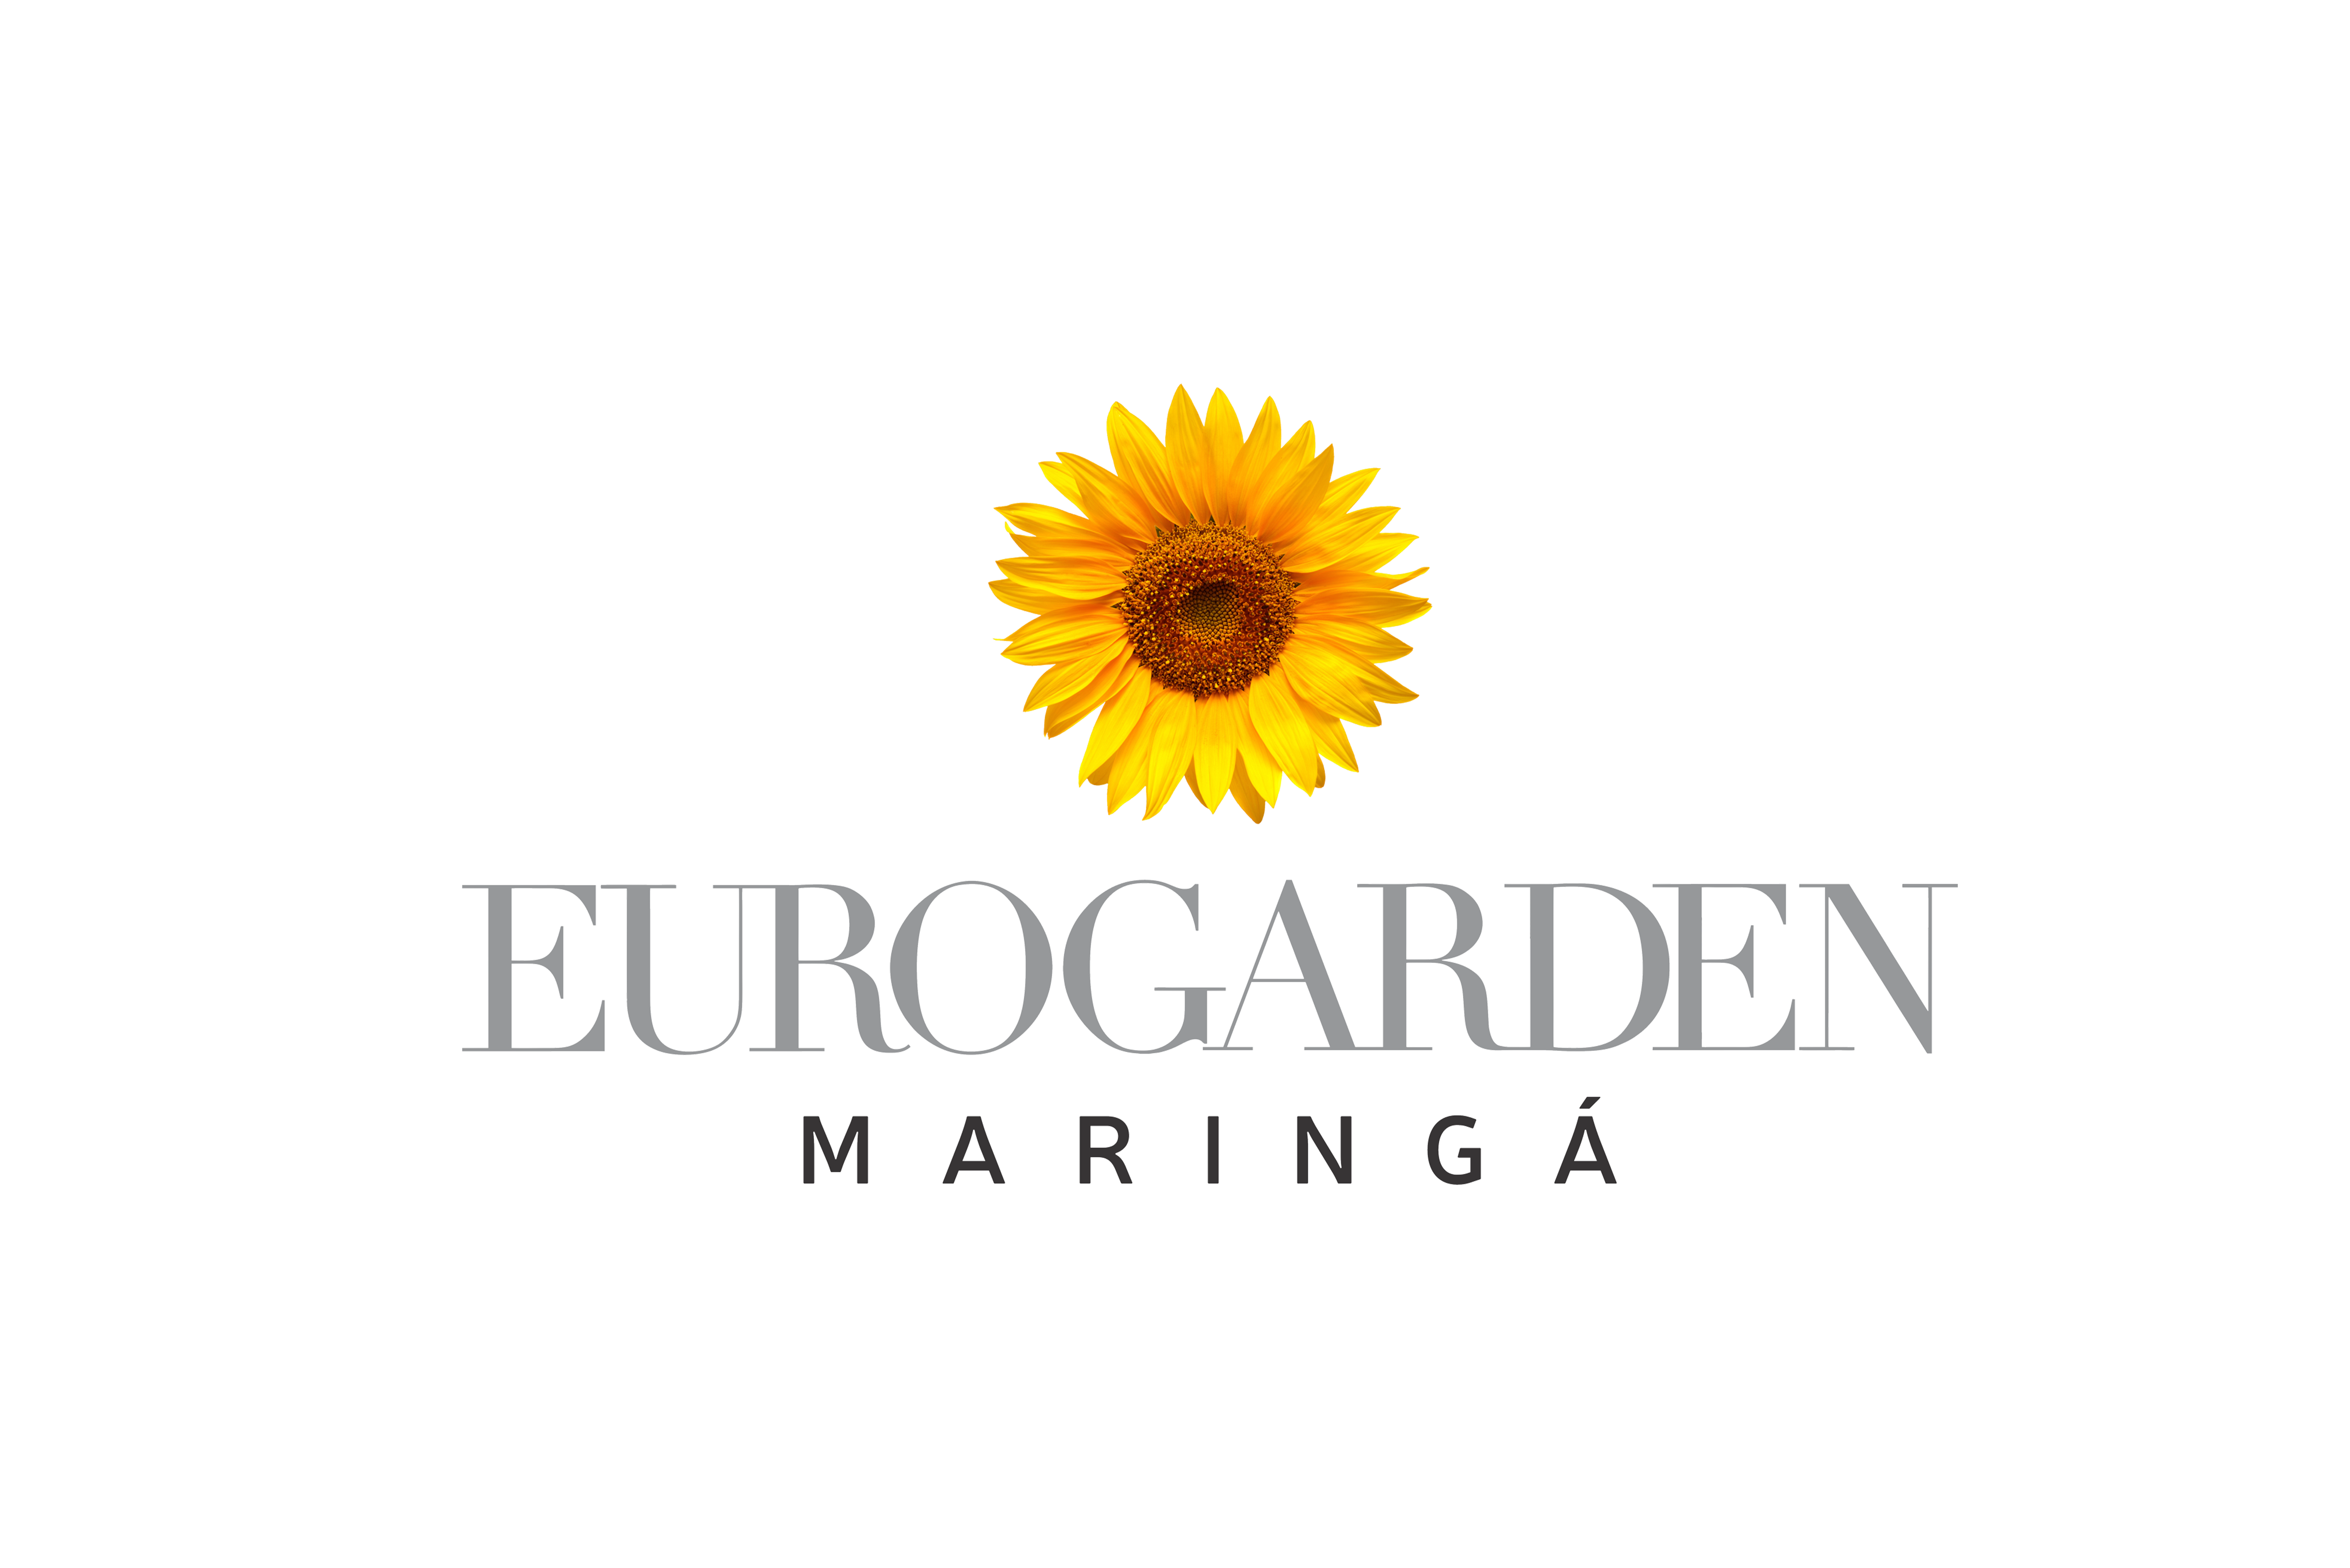 eurogarden site